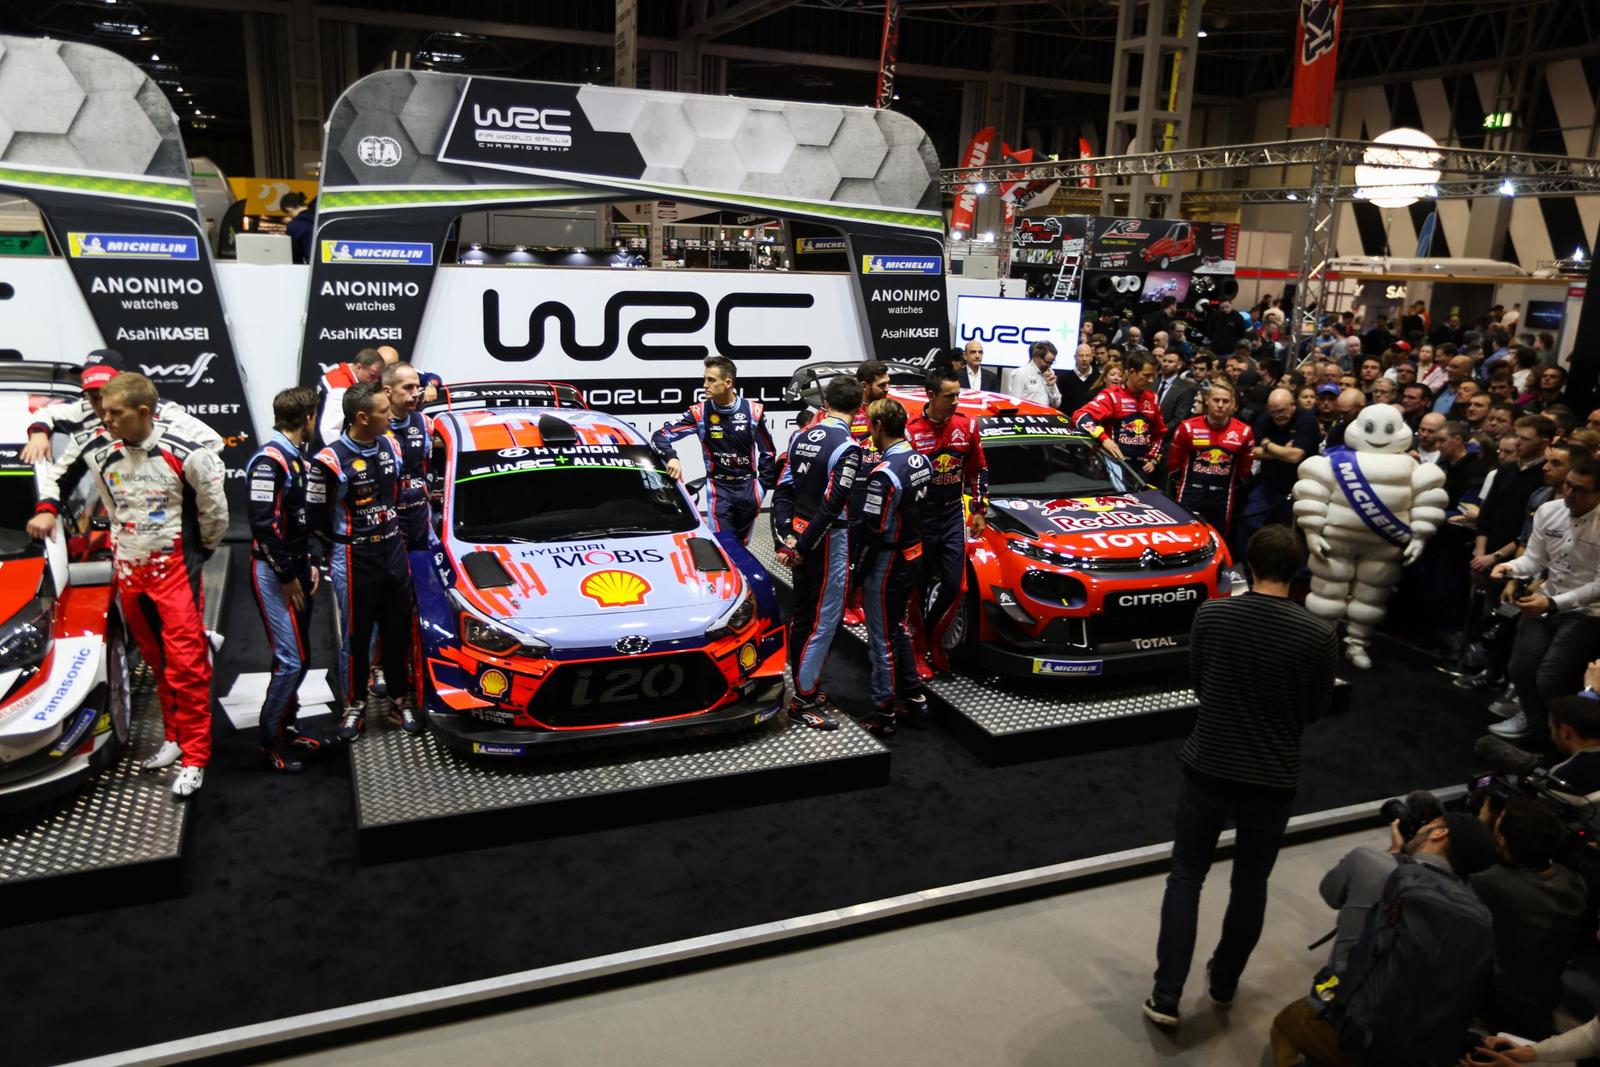 WRC launch 5